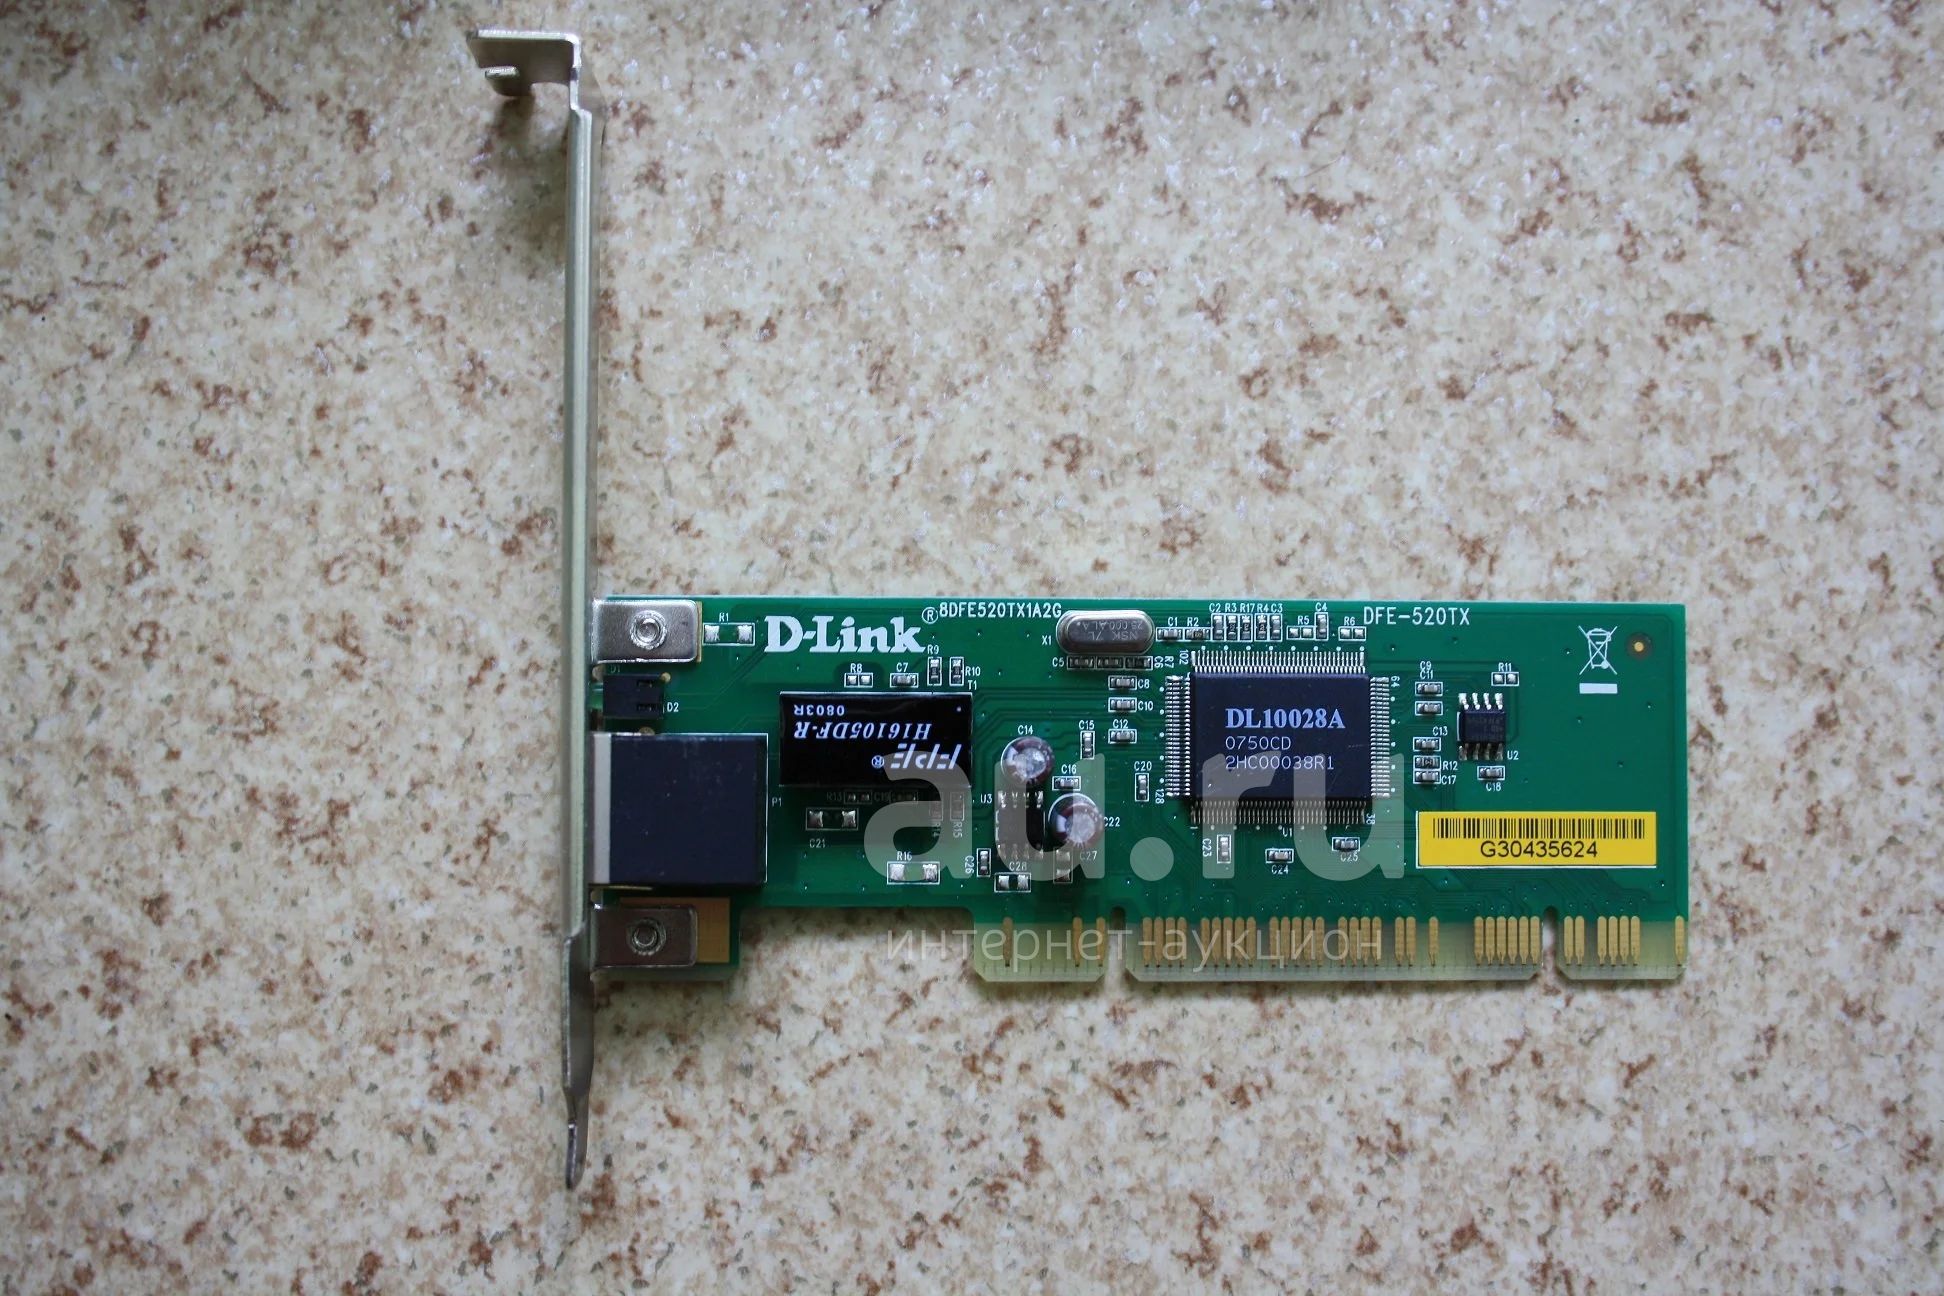 DFE-520tx. Сетевая карта d-link DFE-690 txd fast Ethernet 10/100 для ноутбука. Продаётся сетевая карта d-link DFE-520tx 10/100base-TX. В отличном рабочем.